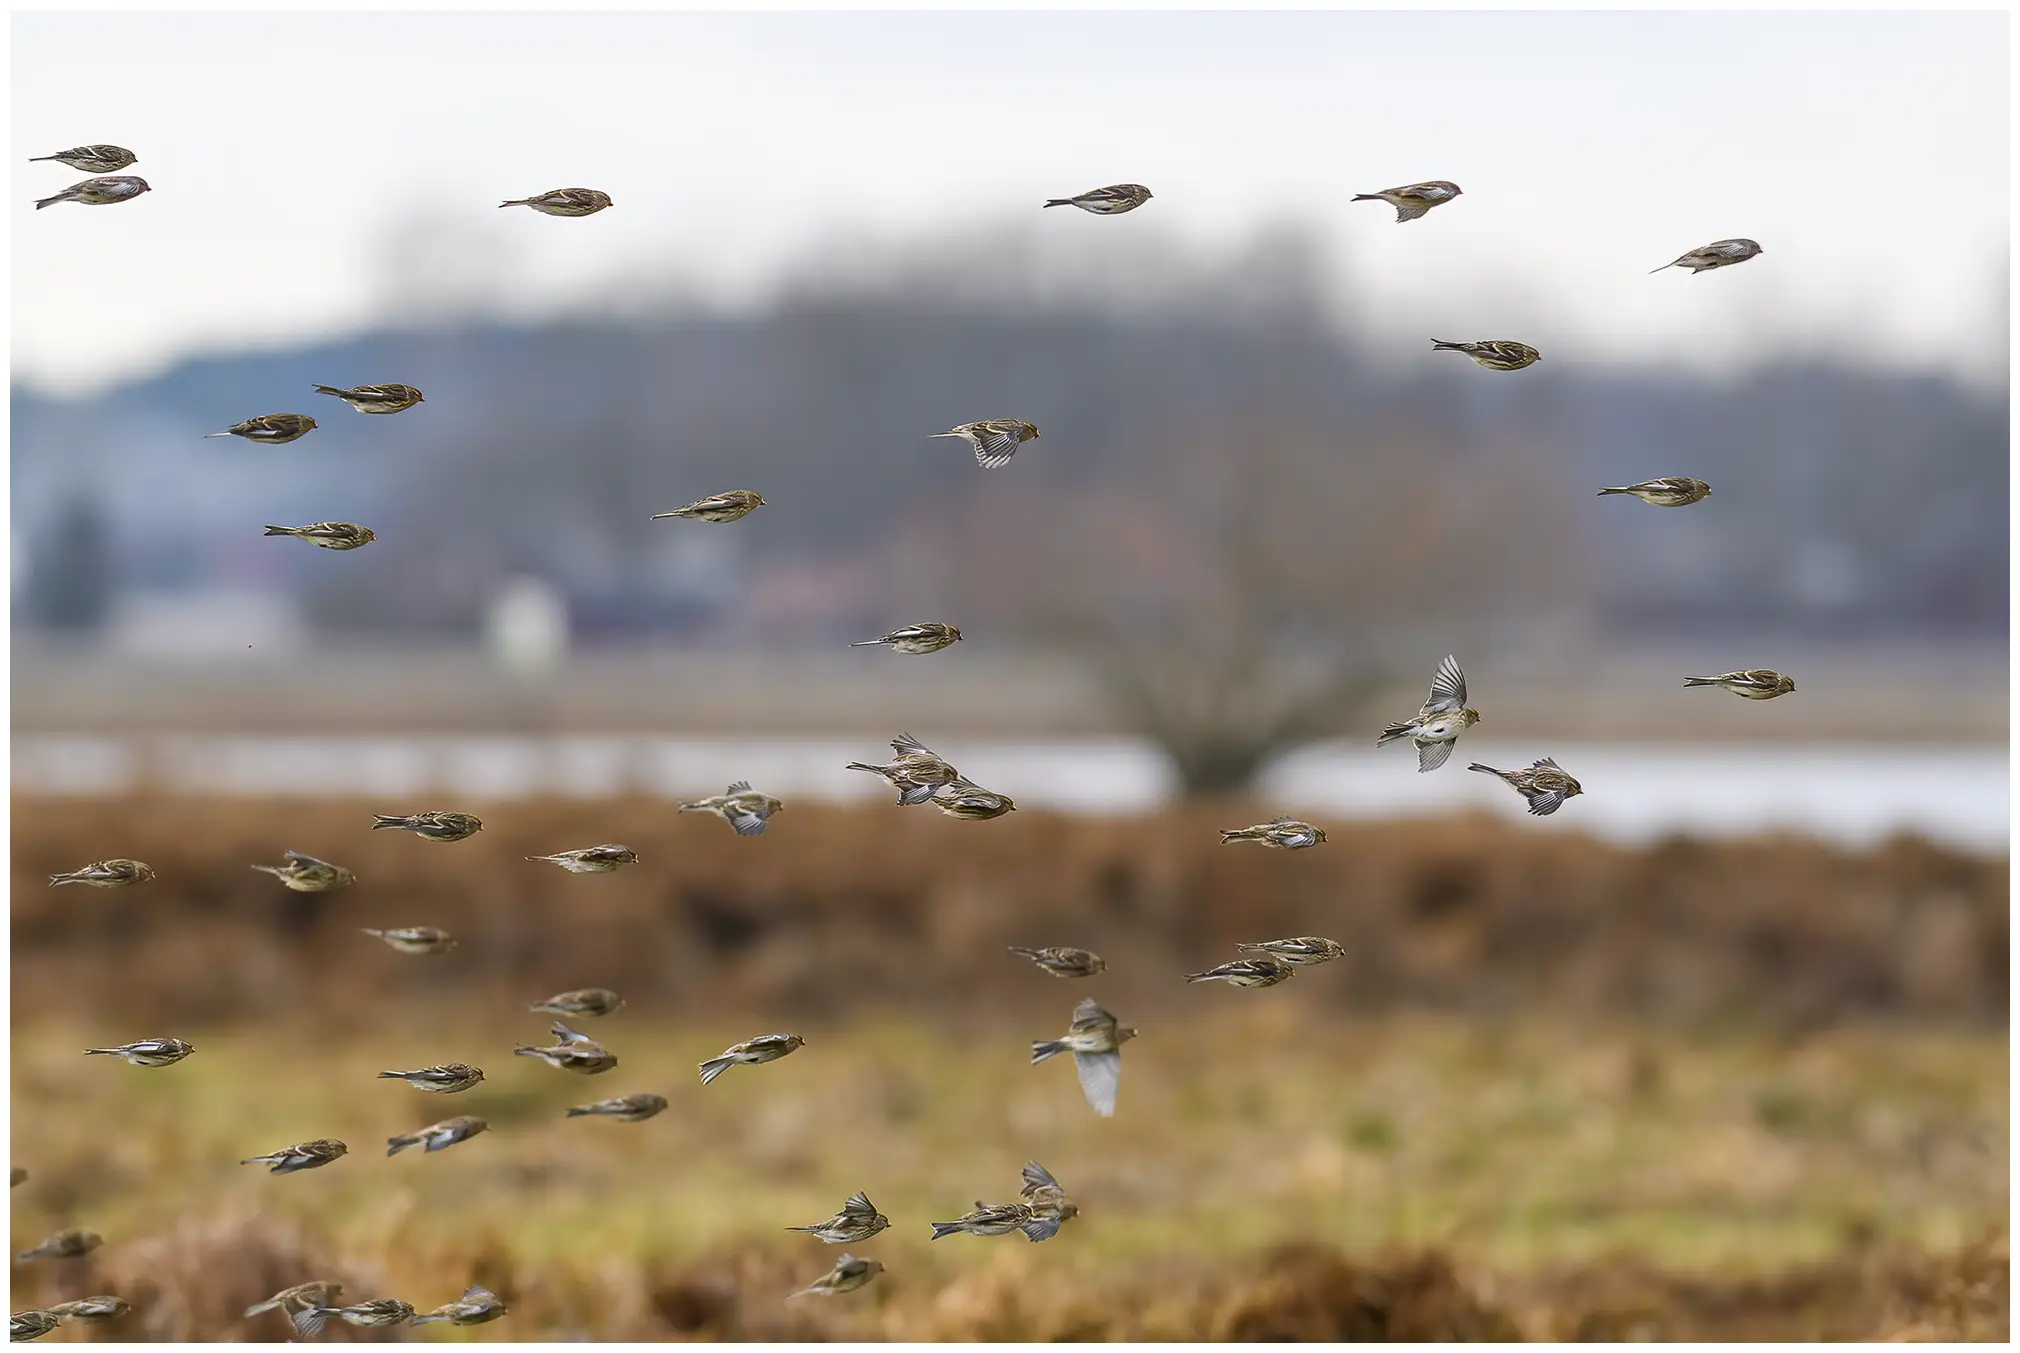 vinterhämpling i flock flyger